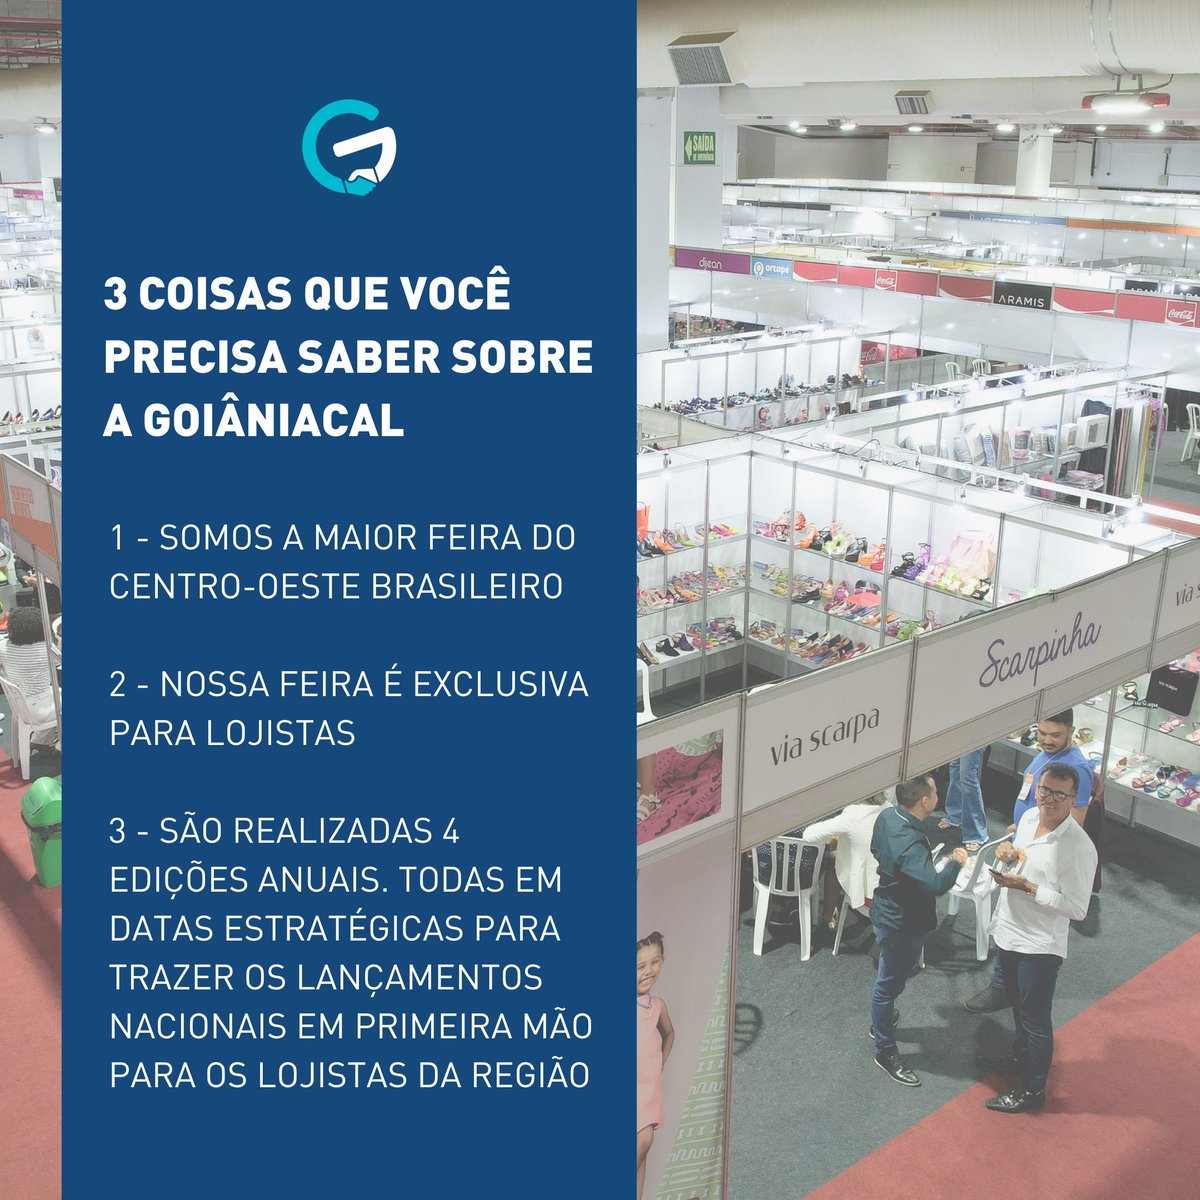 Ainda não conhece a #Goiâniacal?
Então veja 3 coisas sobre nós que você precisa saber!

#goiania #feiradenegocios #lojista #comprasatacado